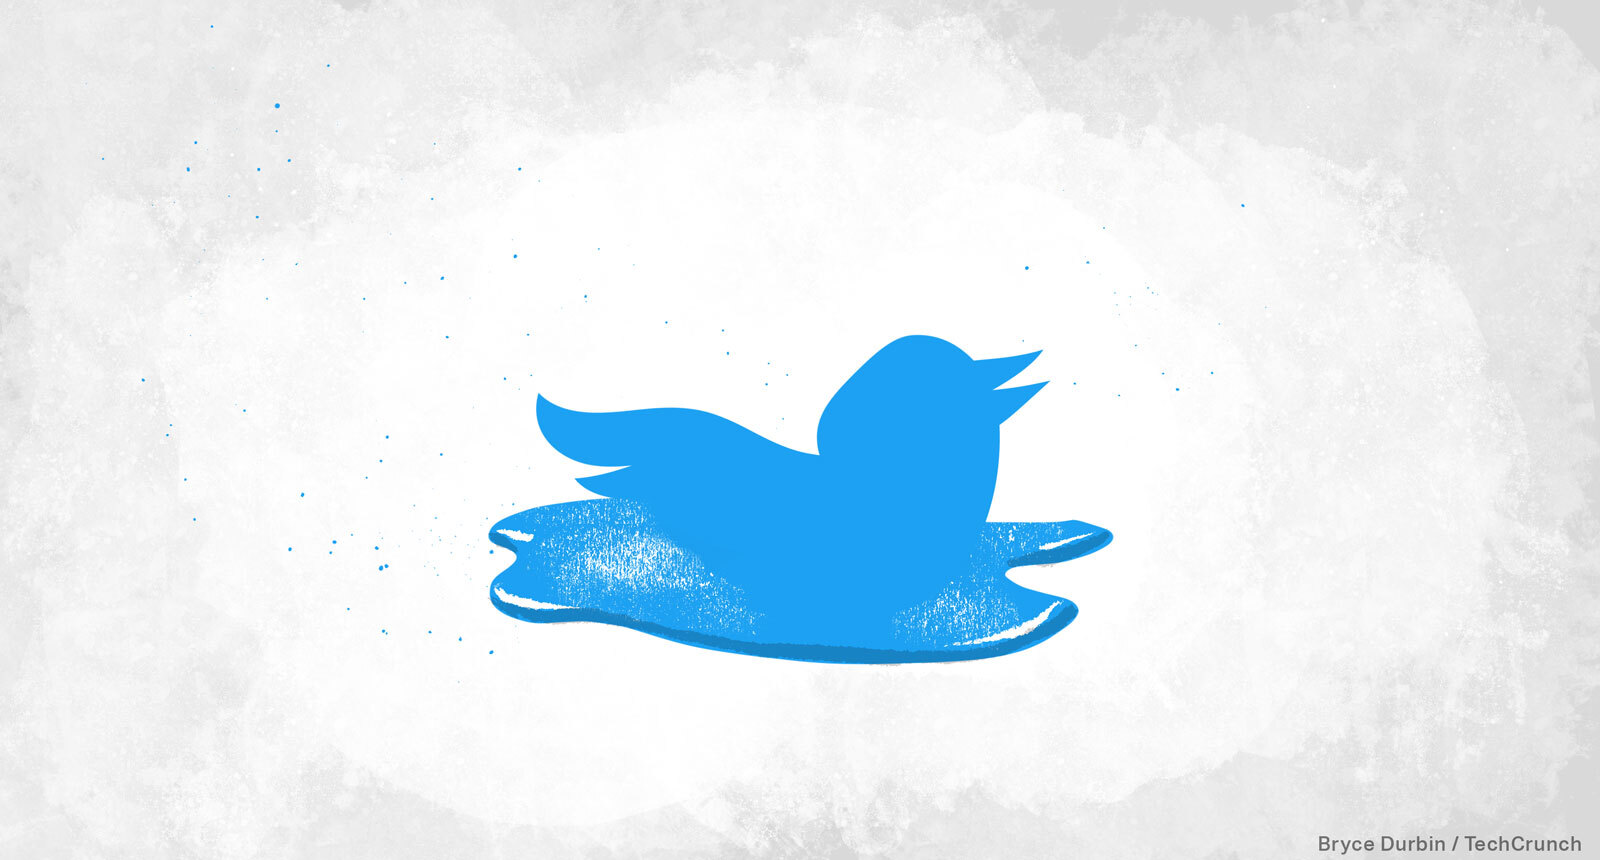 The melting birds on Twitter.